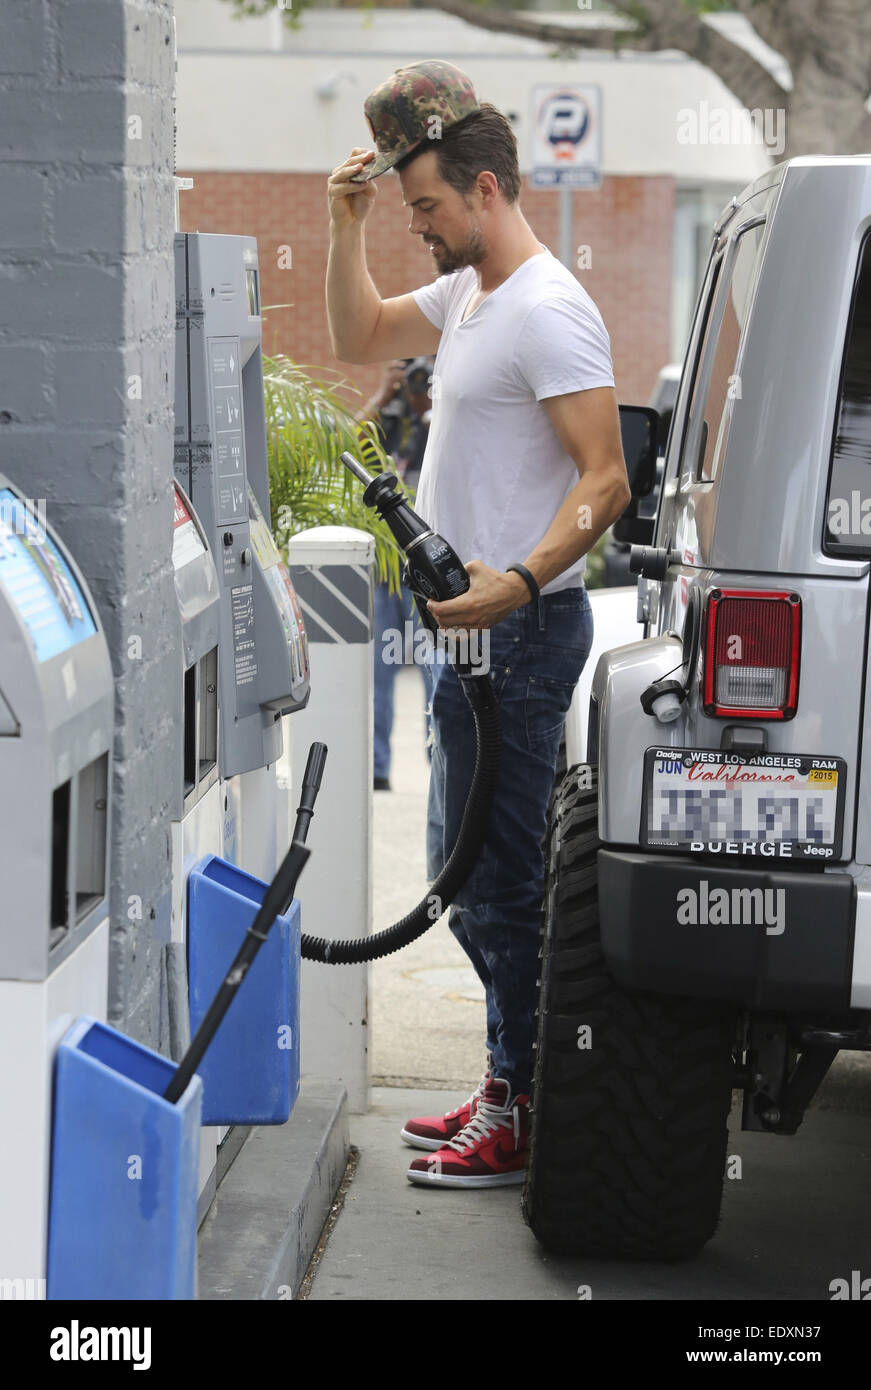 Josh Duhamel pumpt seine eigenen Gas an einer Station Brentwood mit: Josh Duhamel wo: Brentwood, Kalifornien, USA bei: 9. Juli 2014 Stockfoto